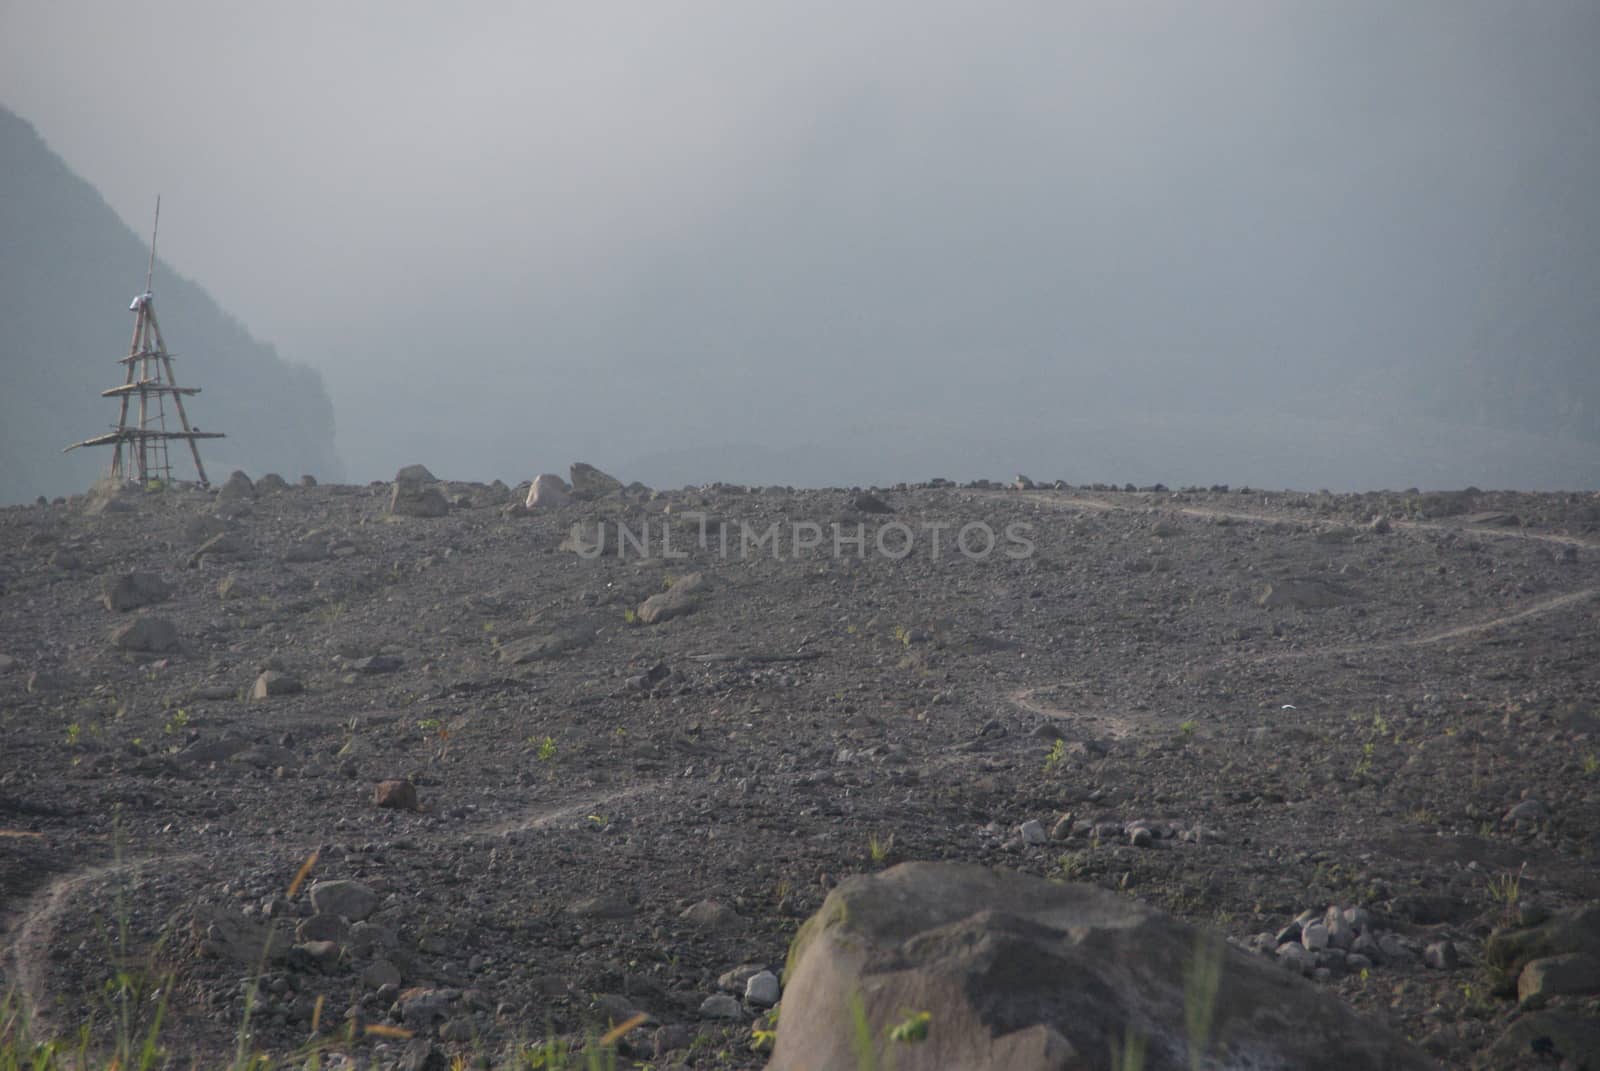 Mount Merapi devastation impact on its surrounding